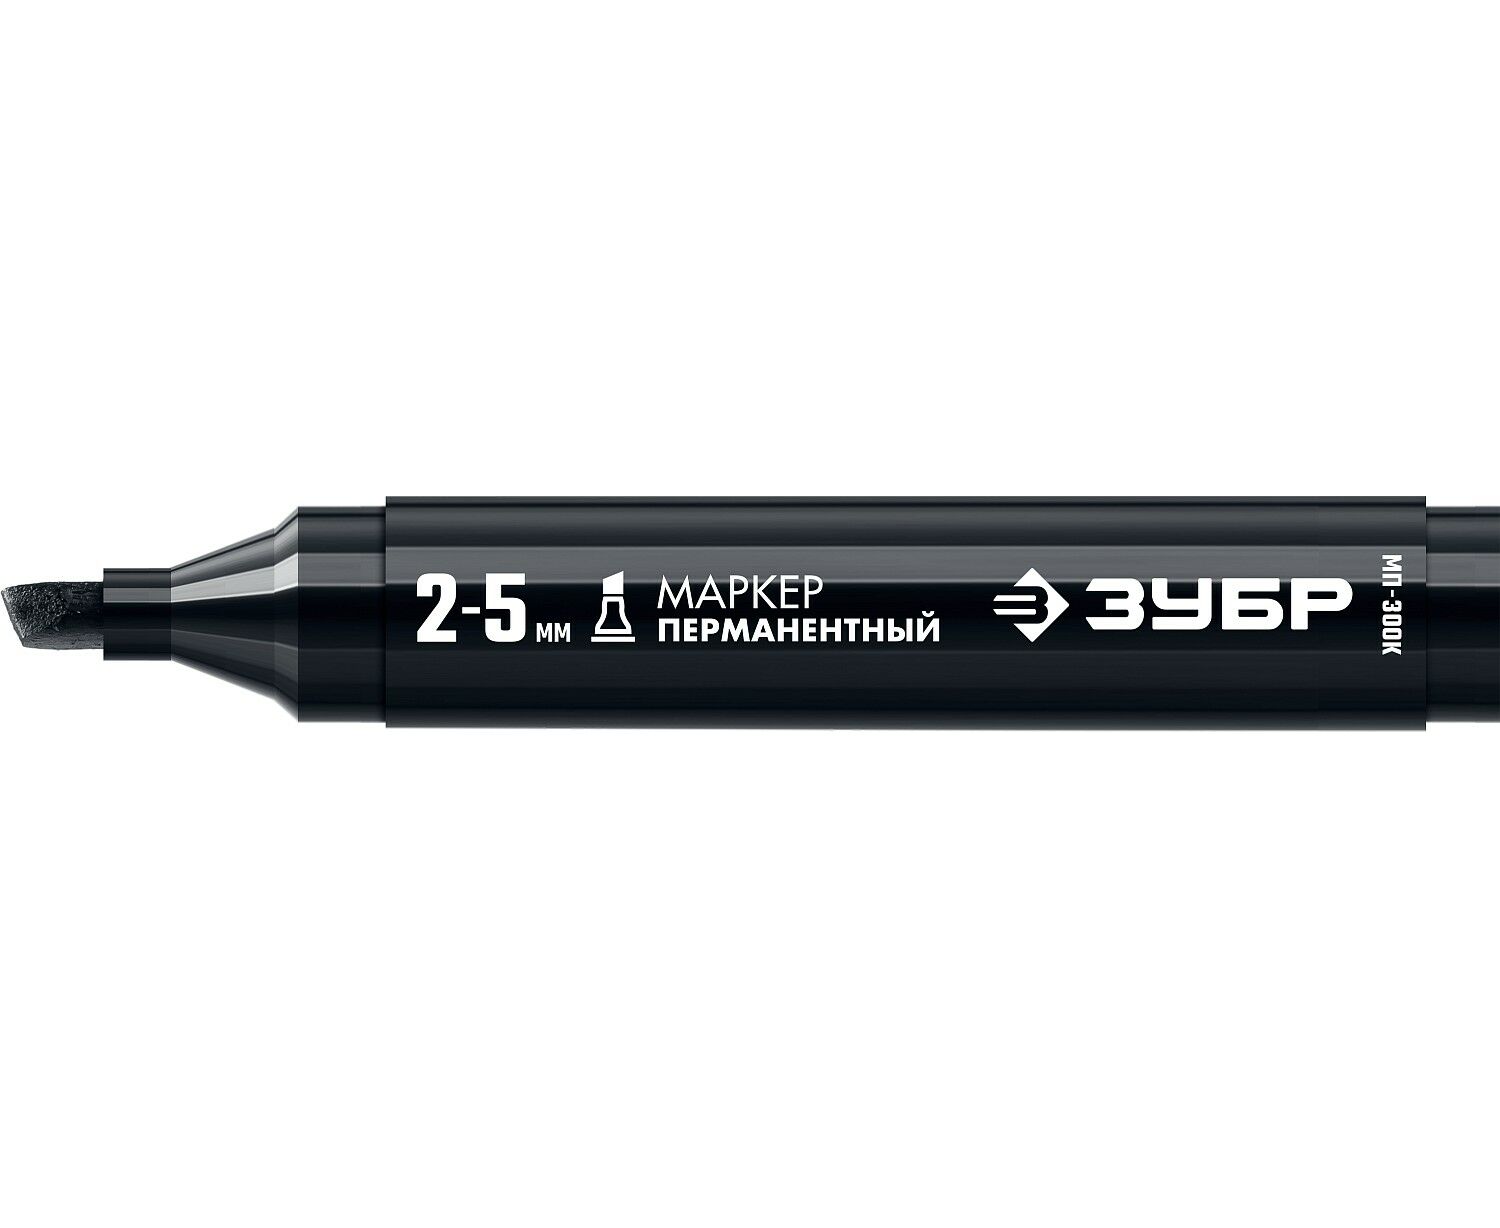 Маркер строительный ЗУБР МП-300К черный, 2-5 мм, клиновидный, перманентный строительный карандаш зубр ксп 4 06305 18 z01 профессиональный 180 мм